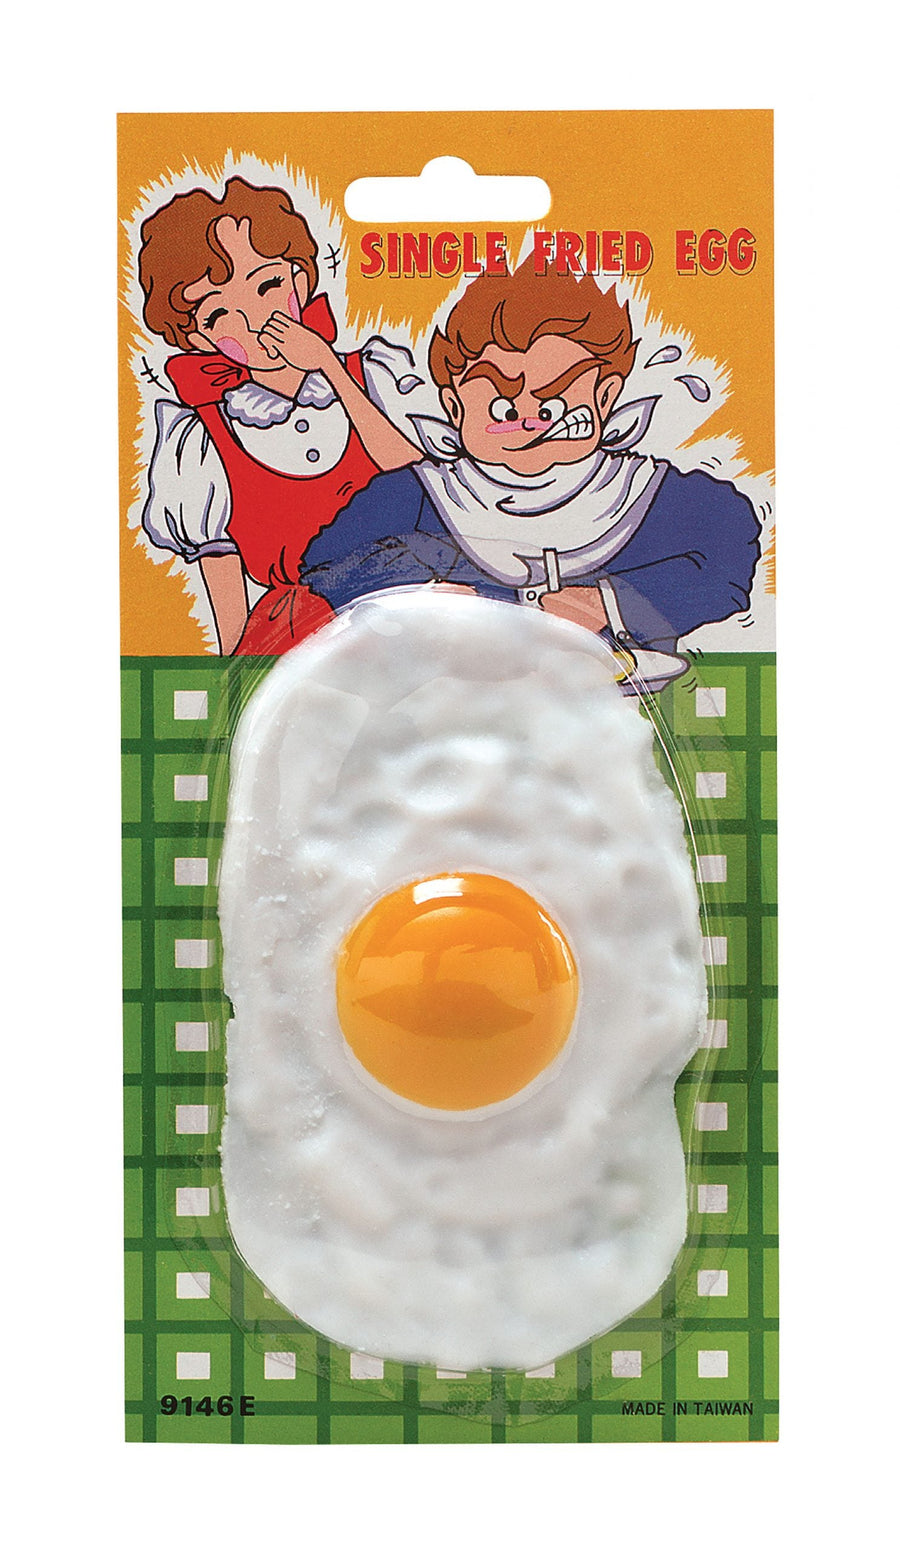 Fried Egg Blister Carded Imitation Food Unisex_1